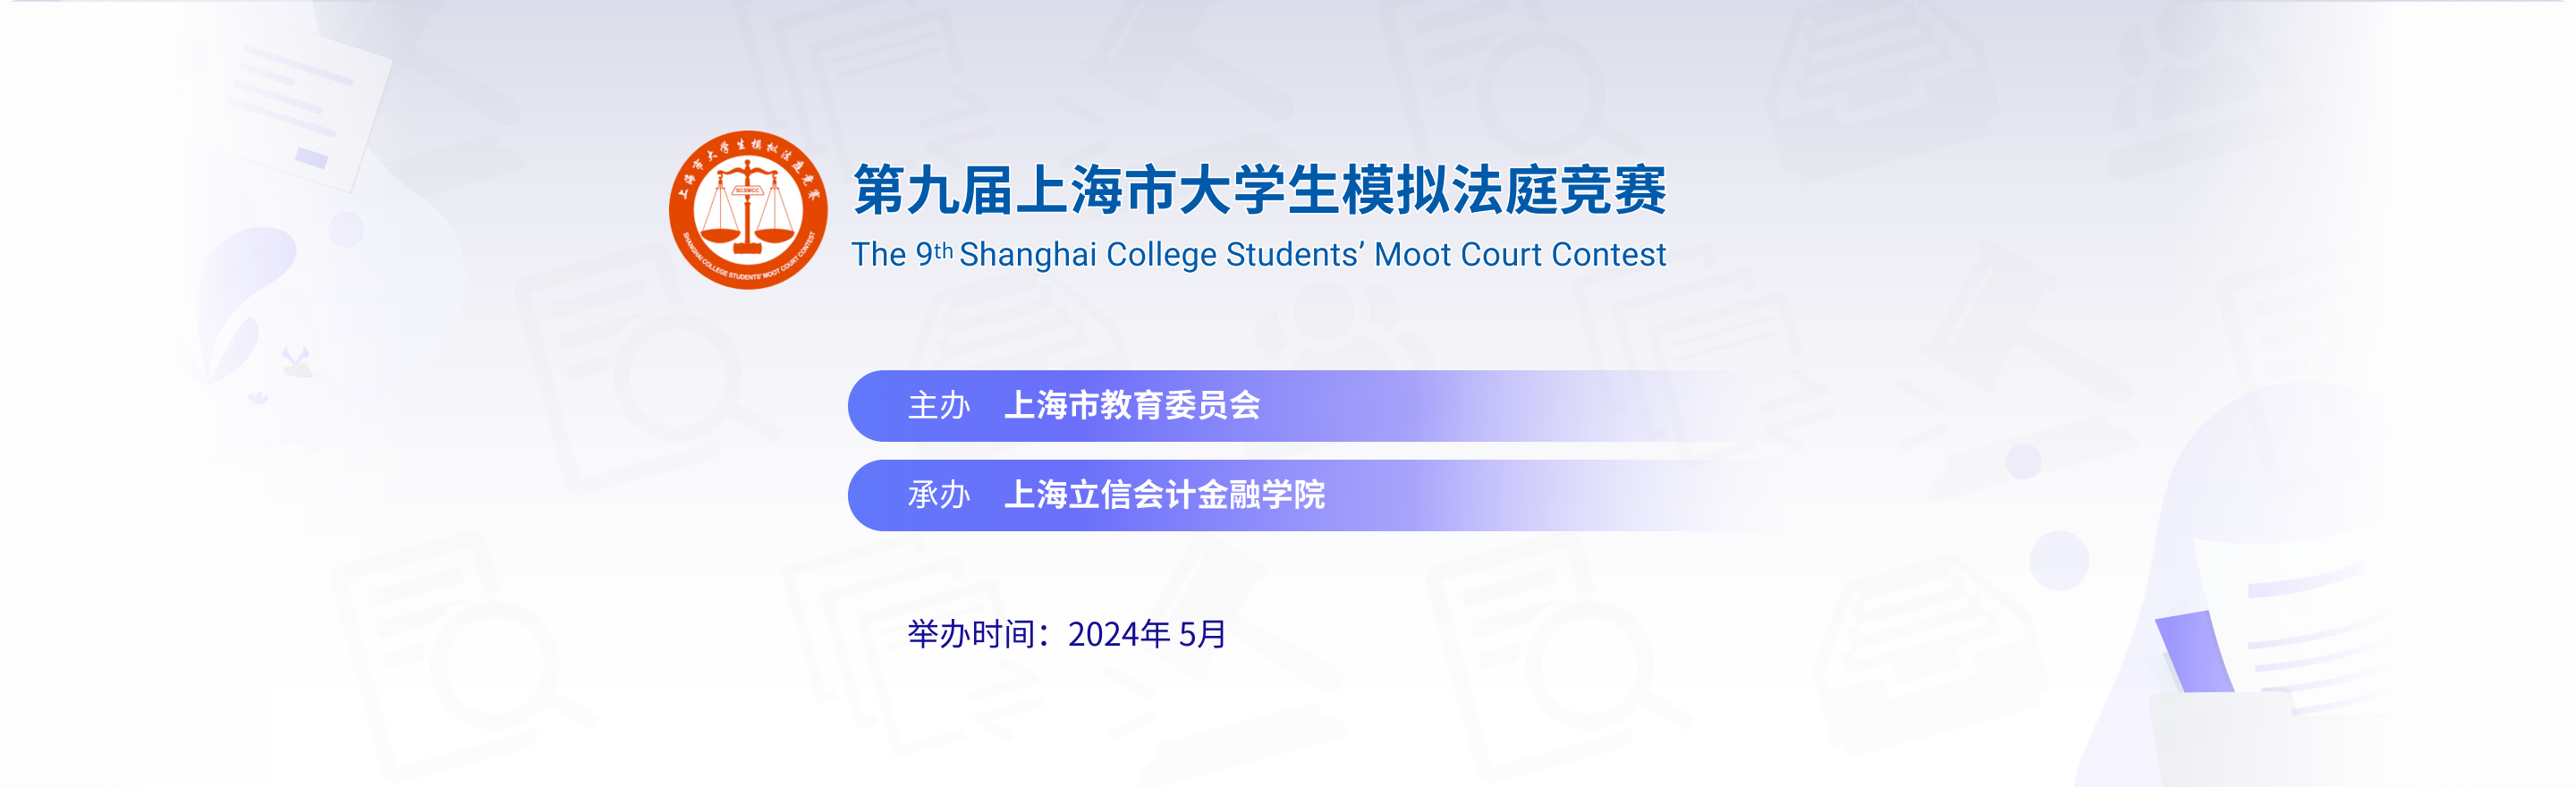 第九届上海市大学生模拟法庭竞赛